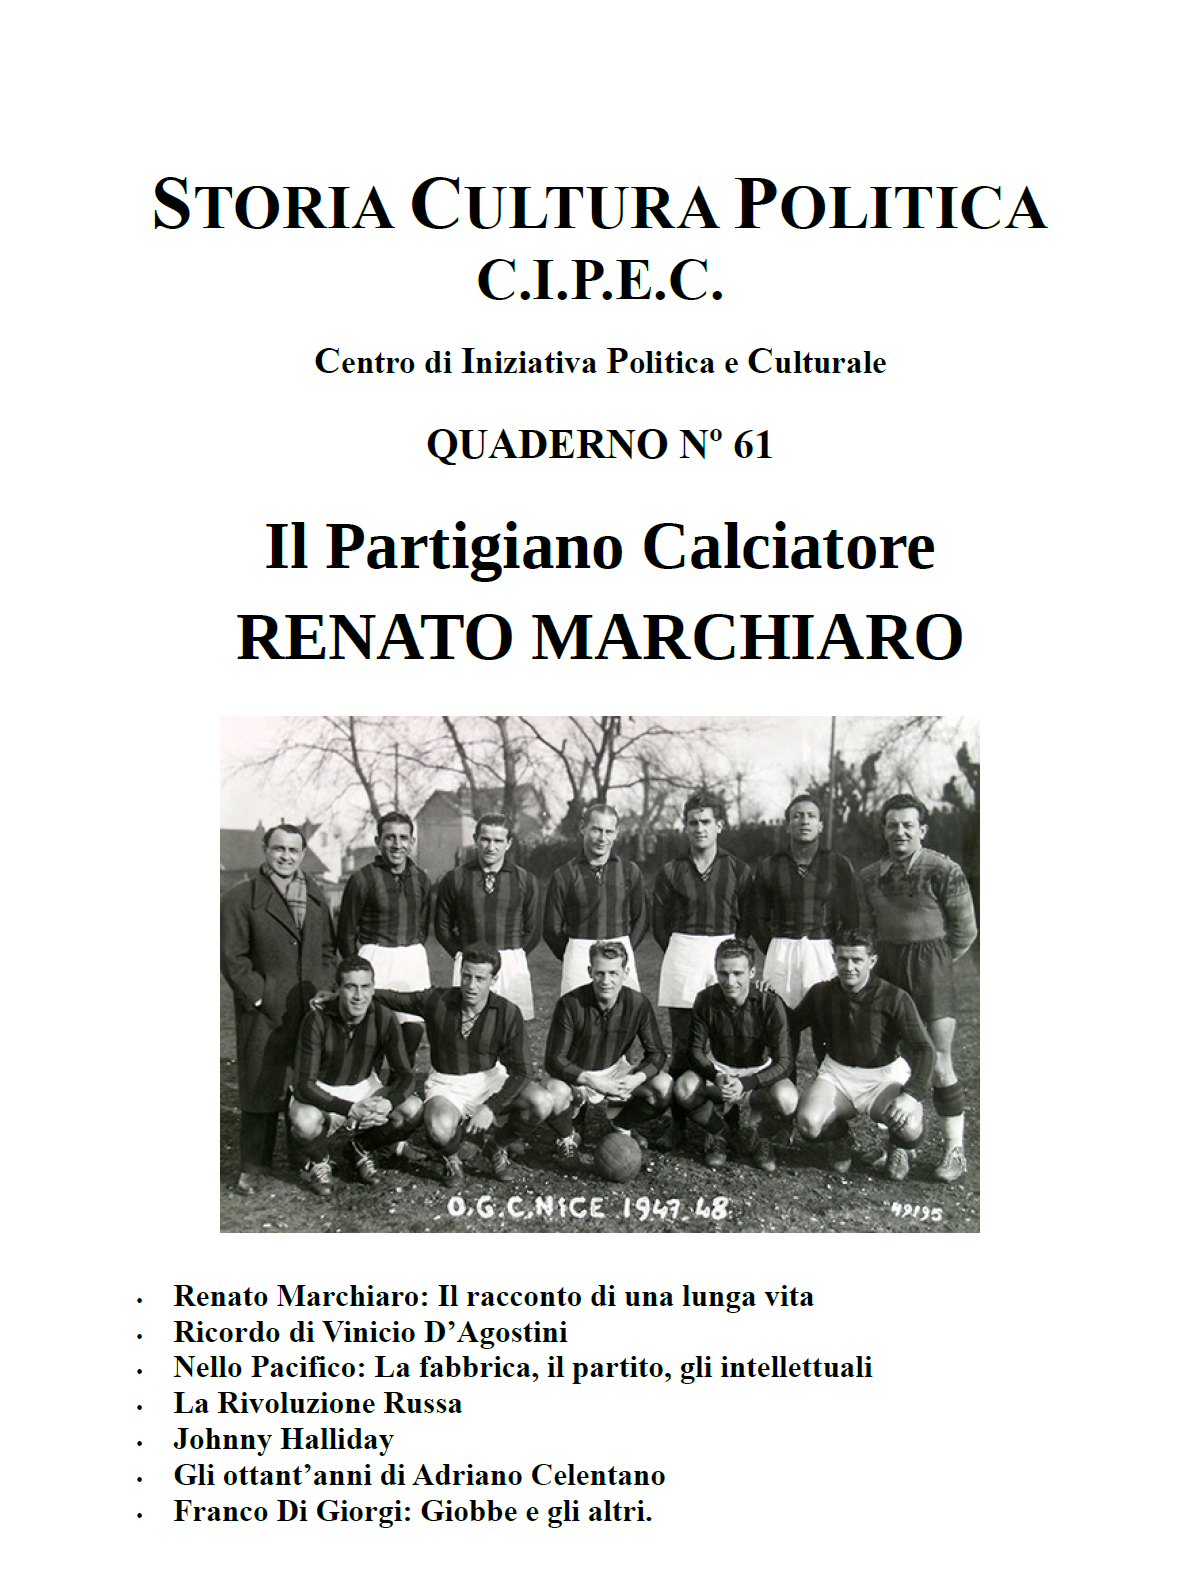 Renato Marchiaro il partigiano calciatore. Quaderno 61